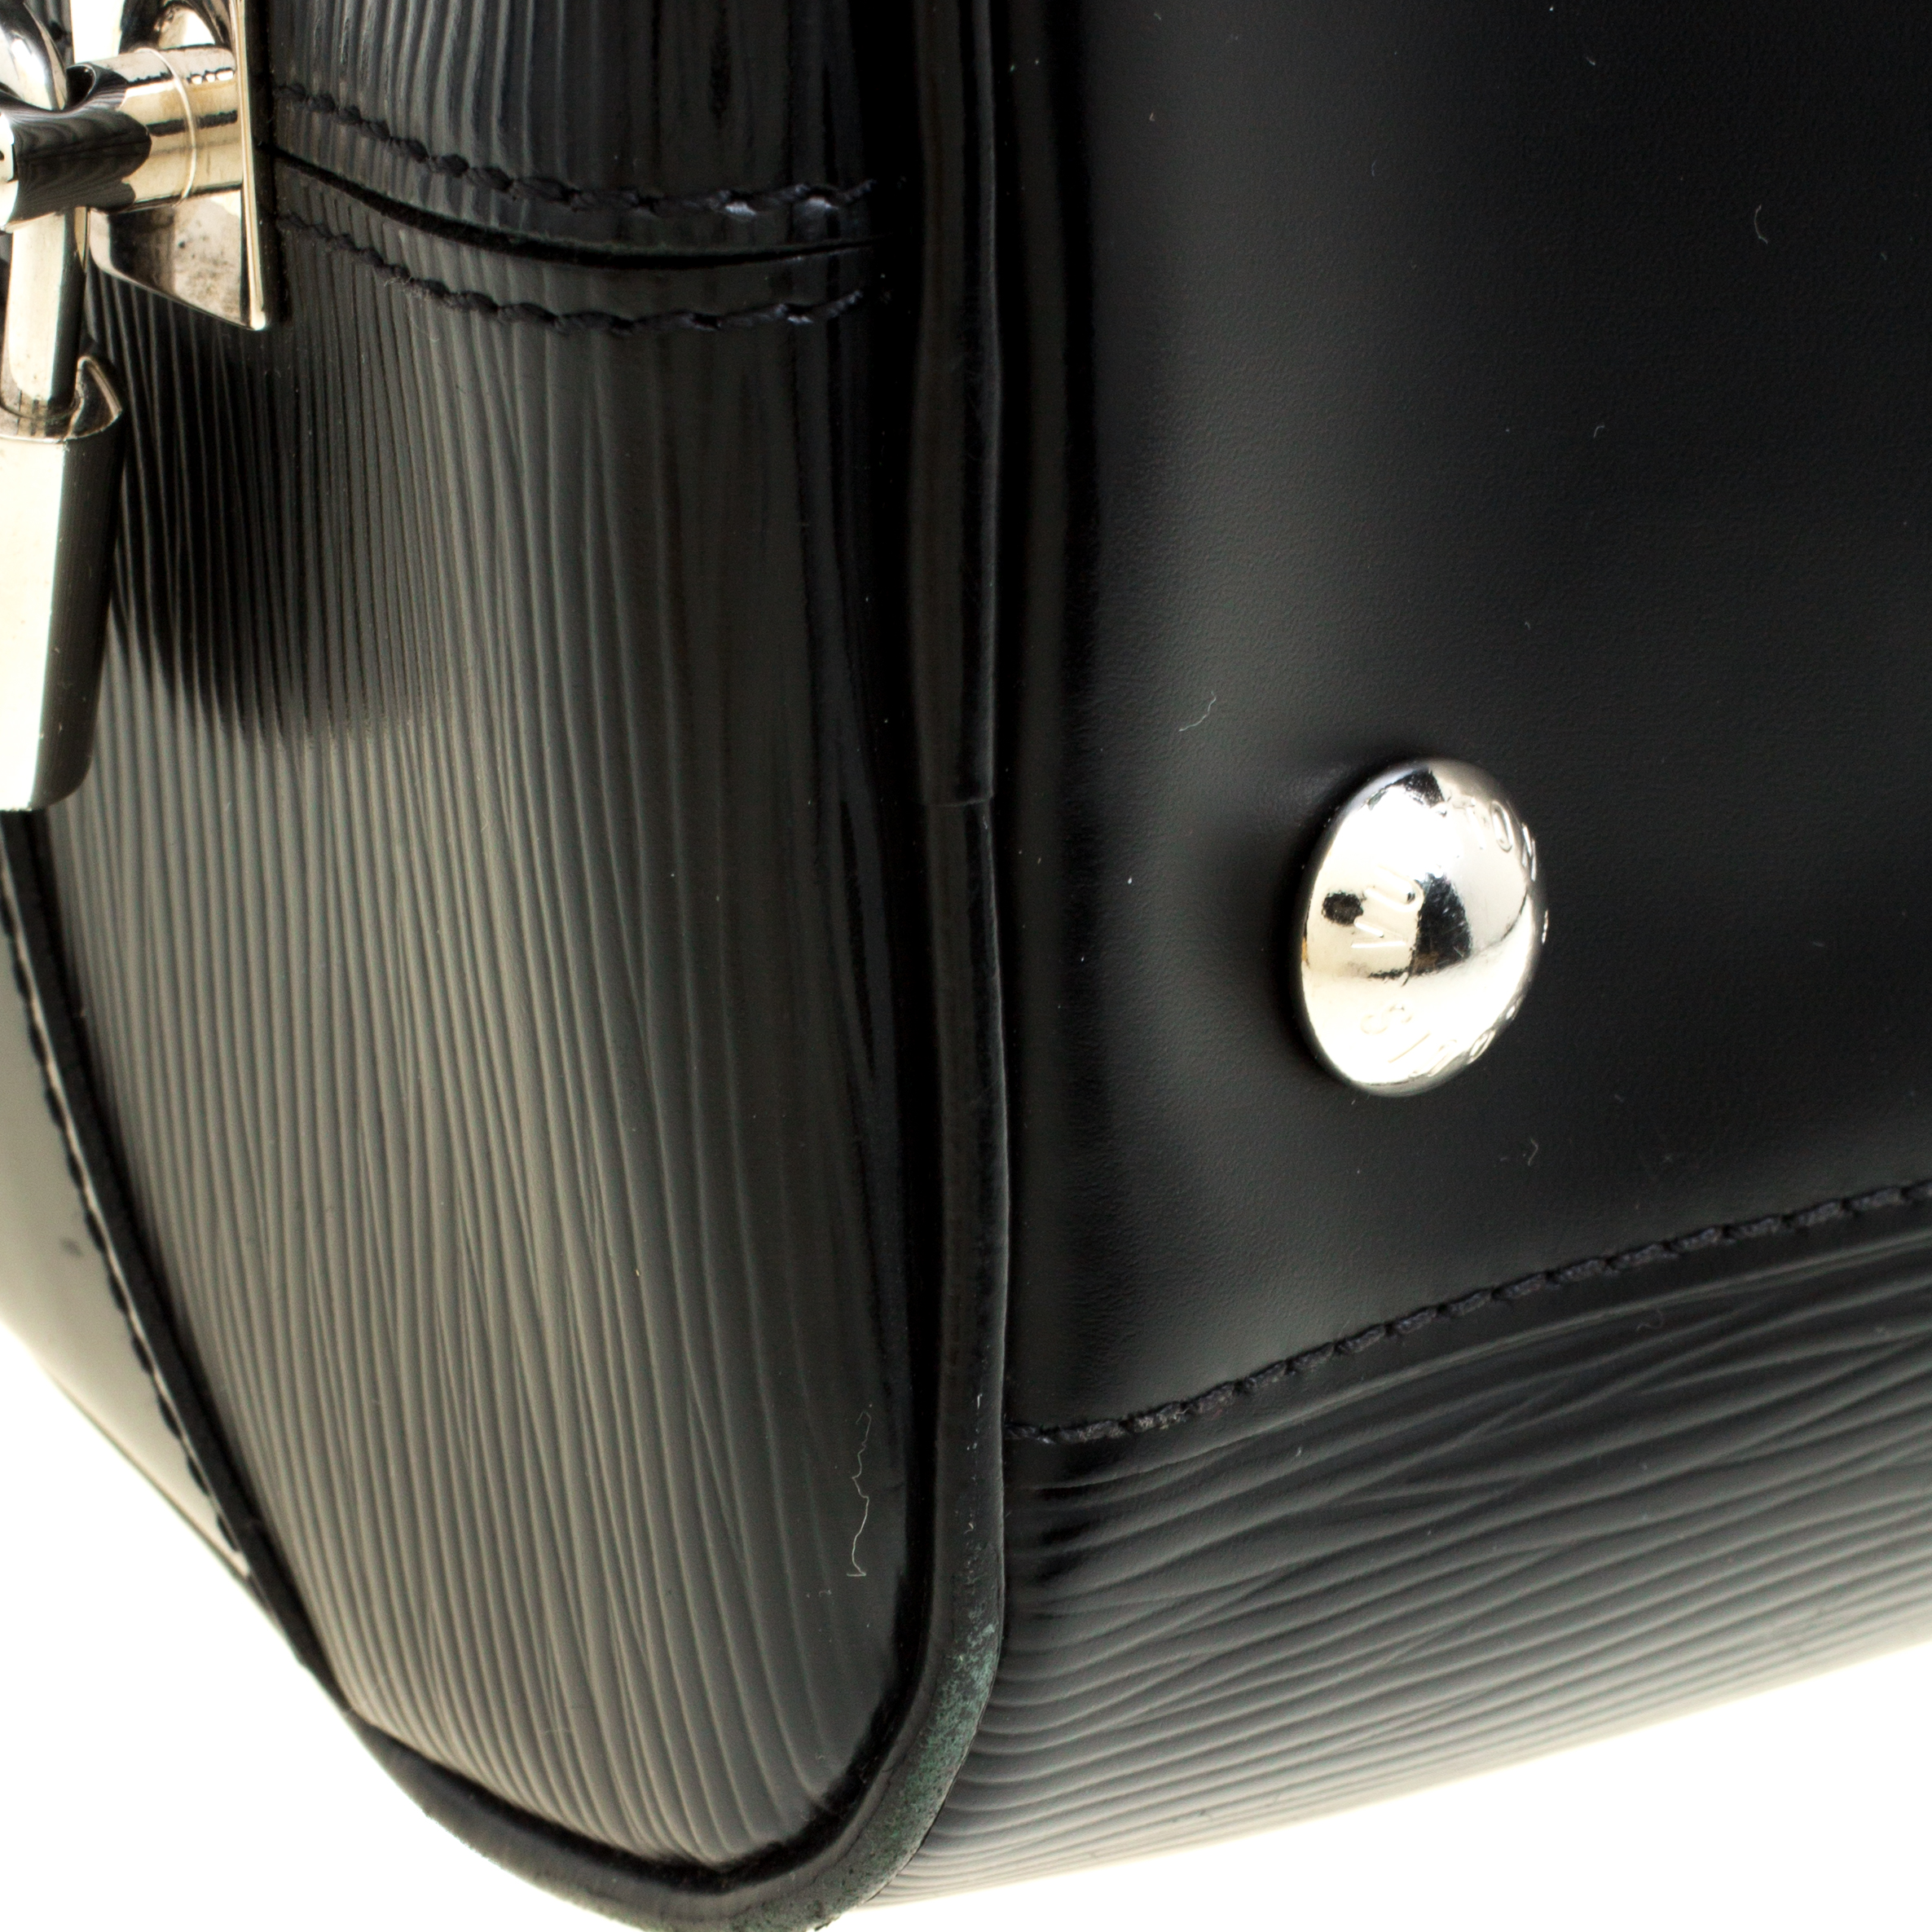 Louis Vuitton Montaigne Handbag 301022